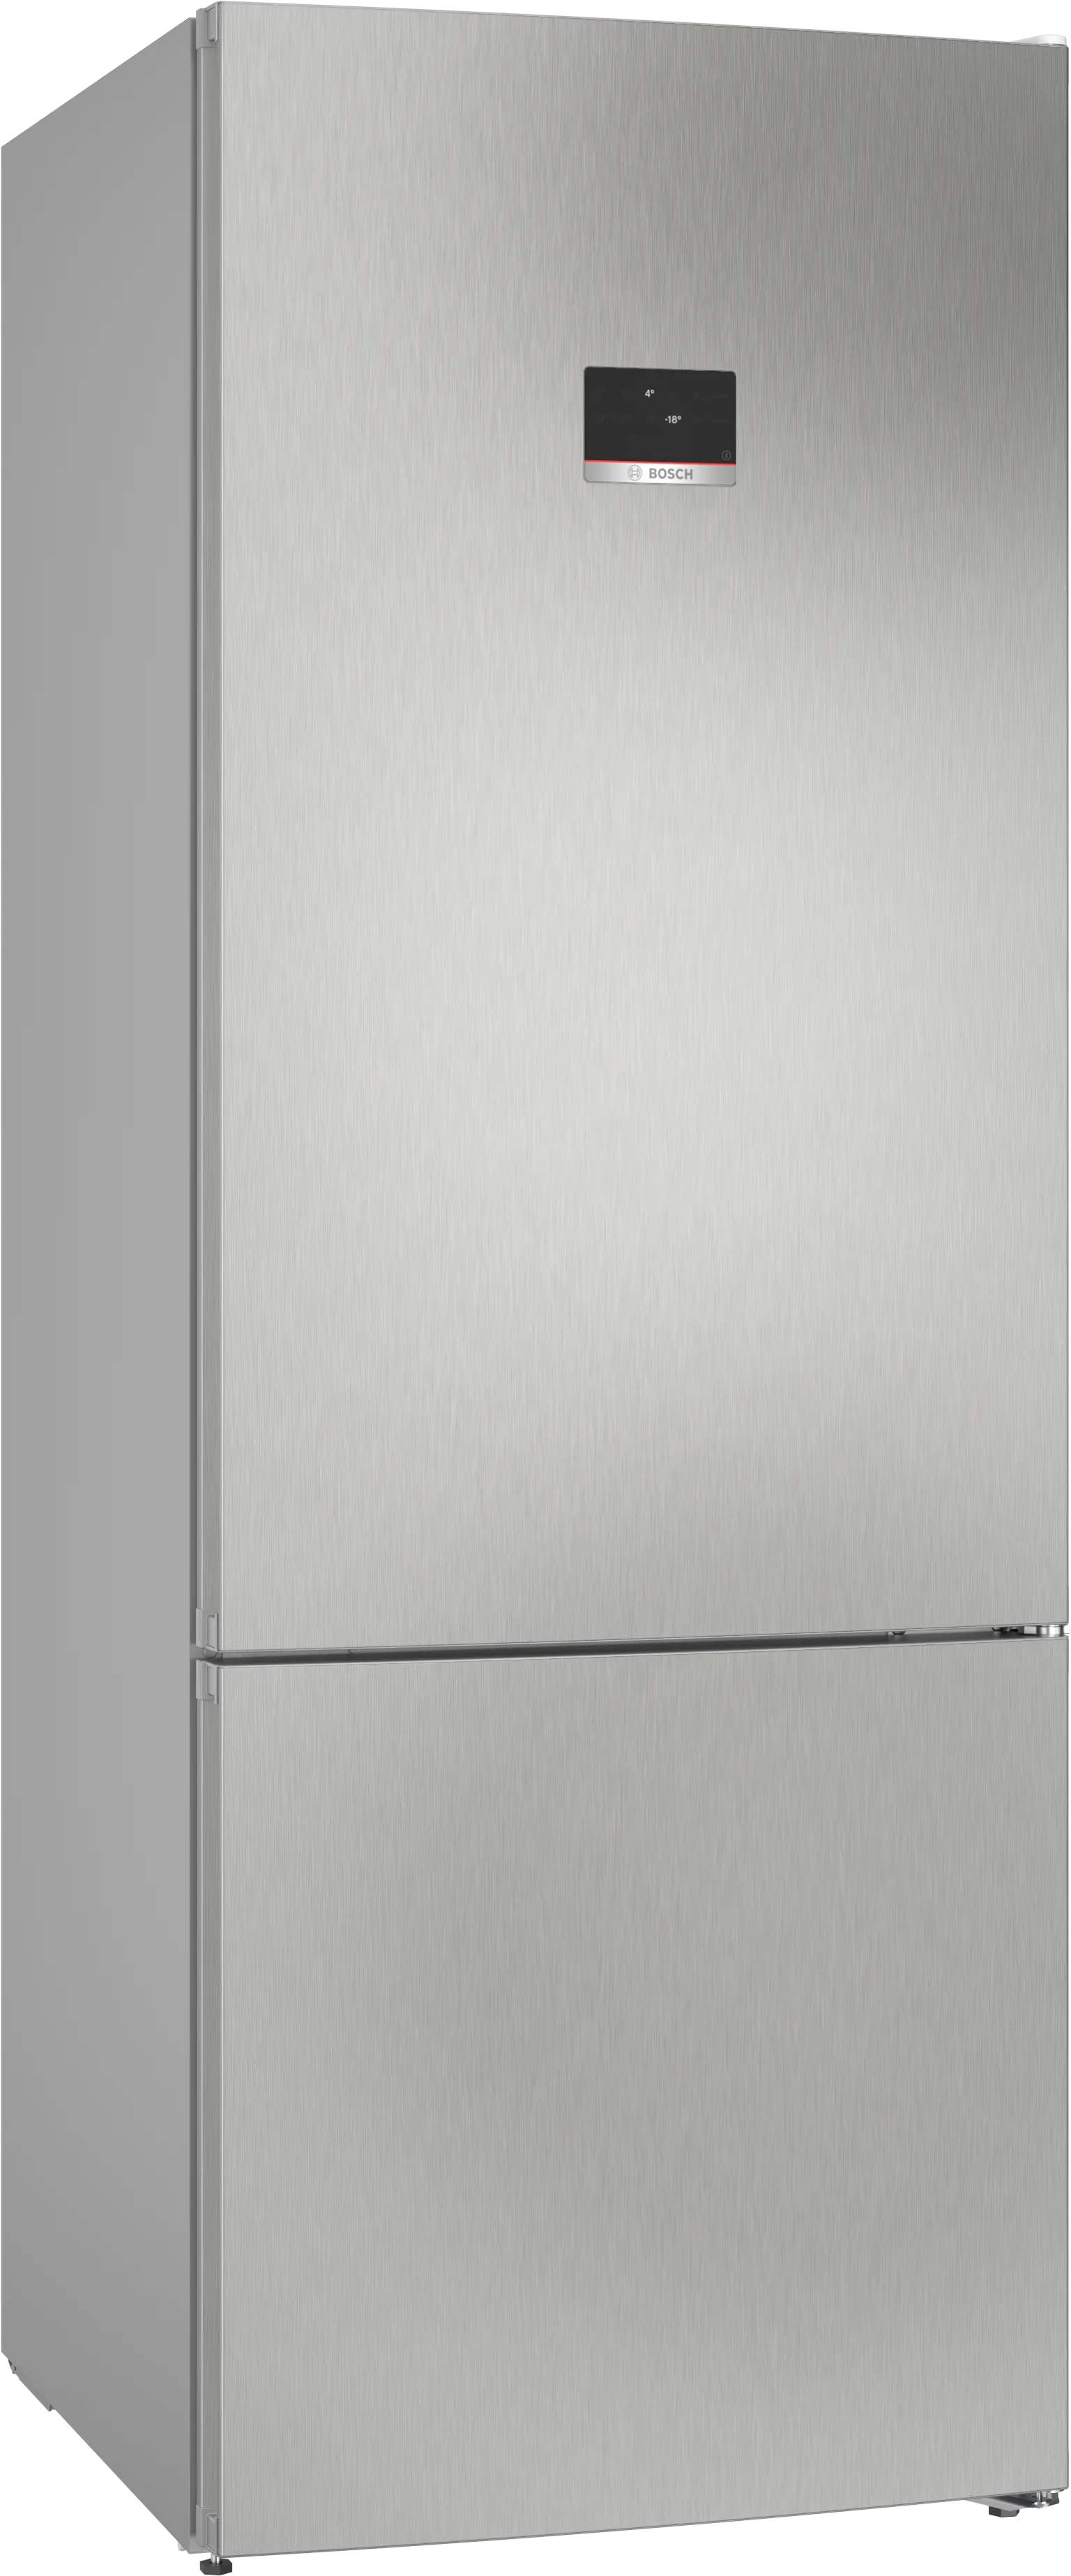 Seria 4 Combină frigorifică independentă 193 x 70 cm Inox Look 